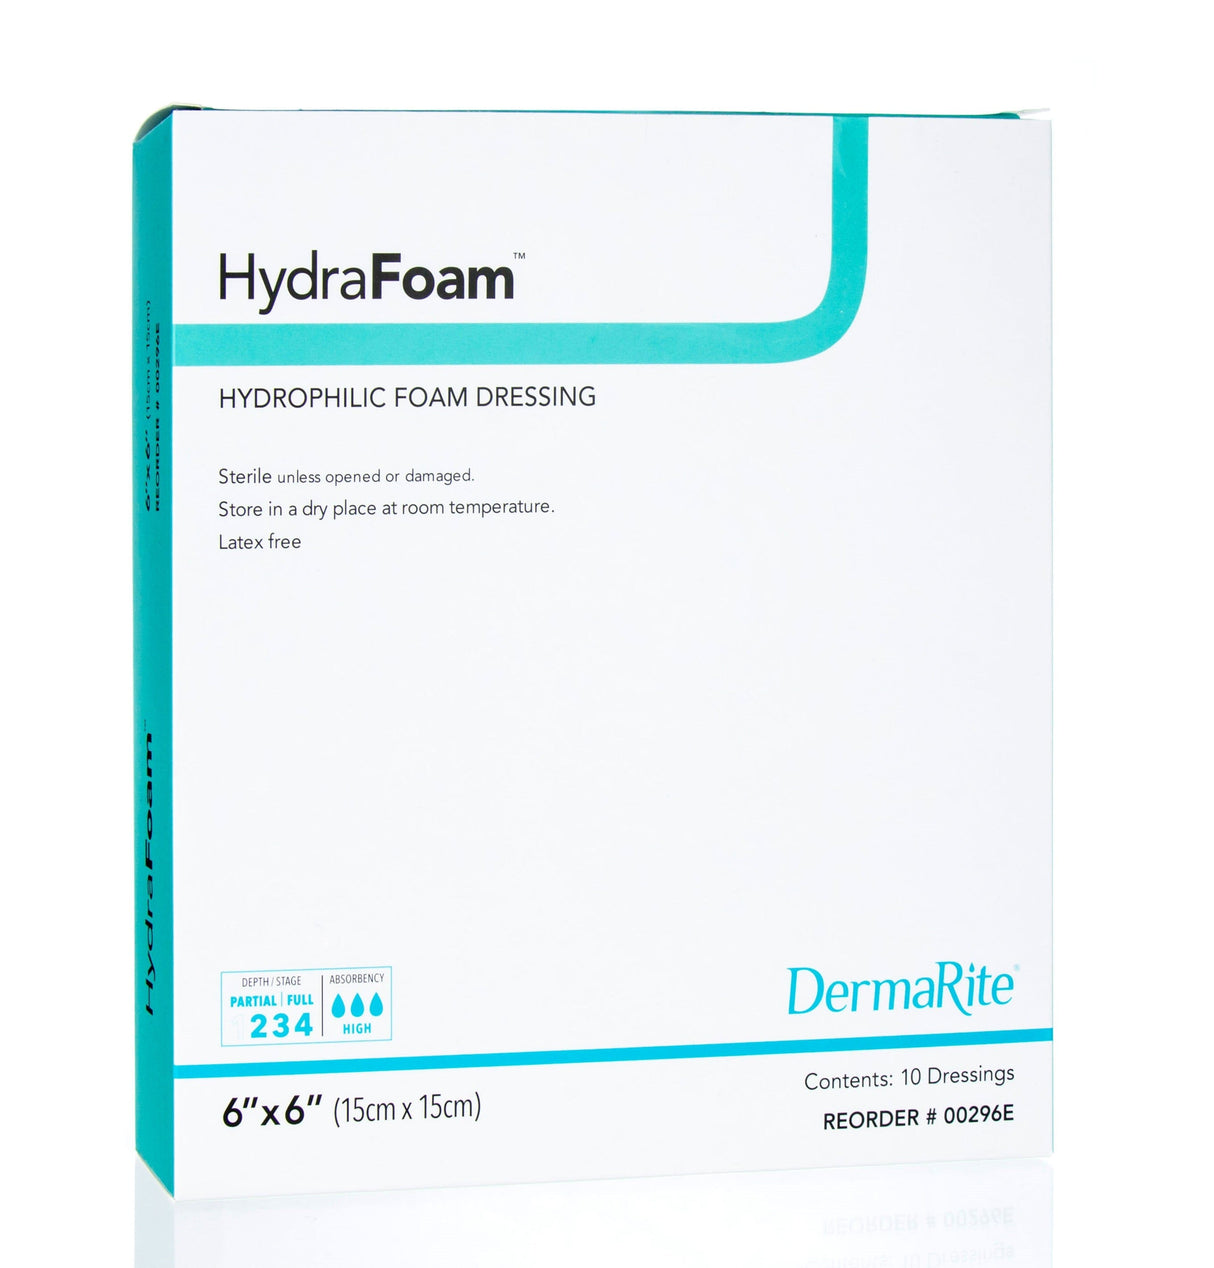 Image of HydraFoam Hydrophilic Foam Dressing, 6" x 6"